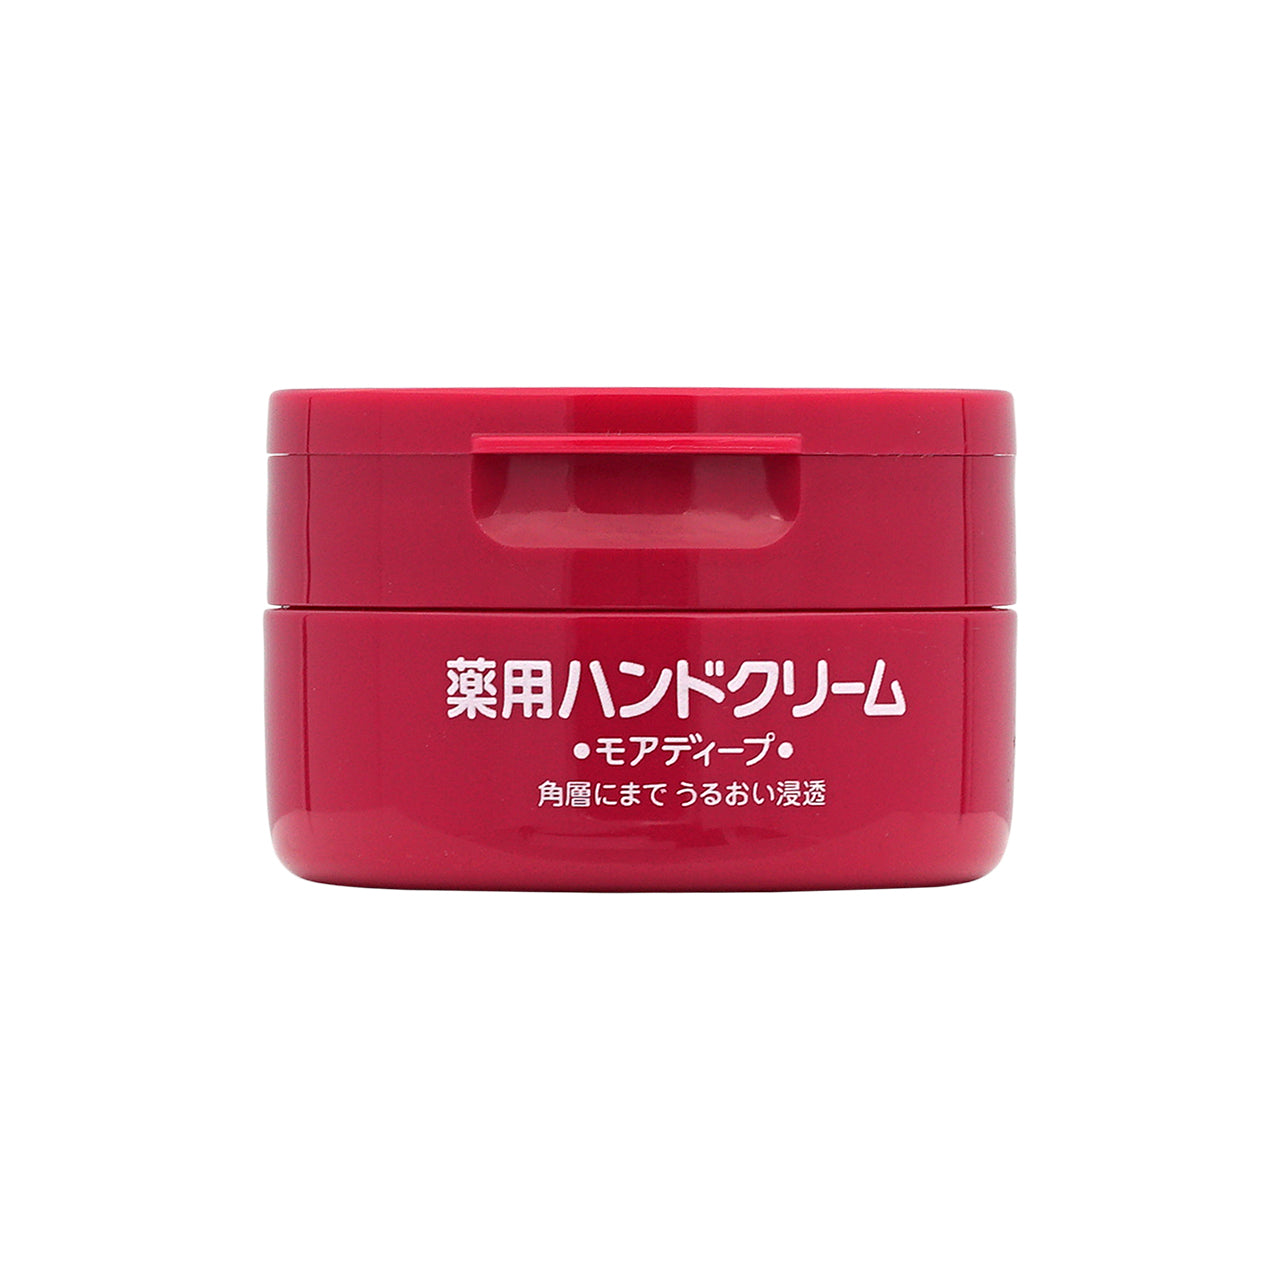 Shiseido 药用润手霜